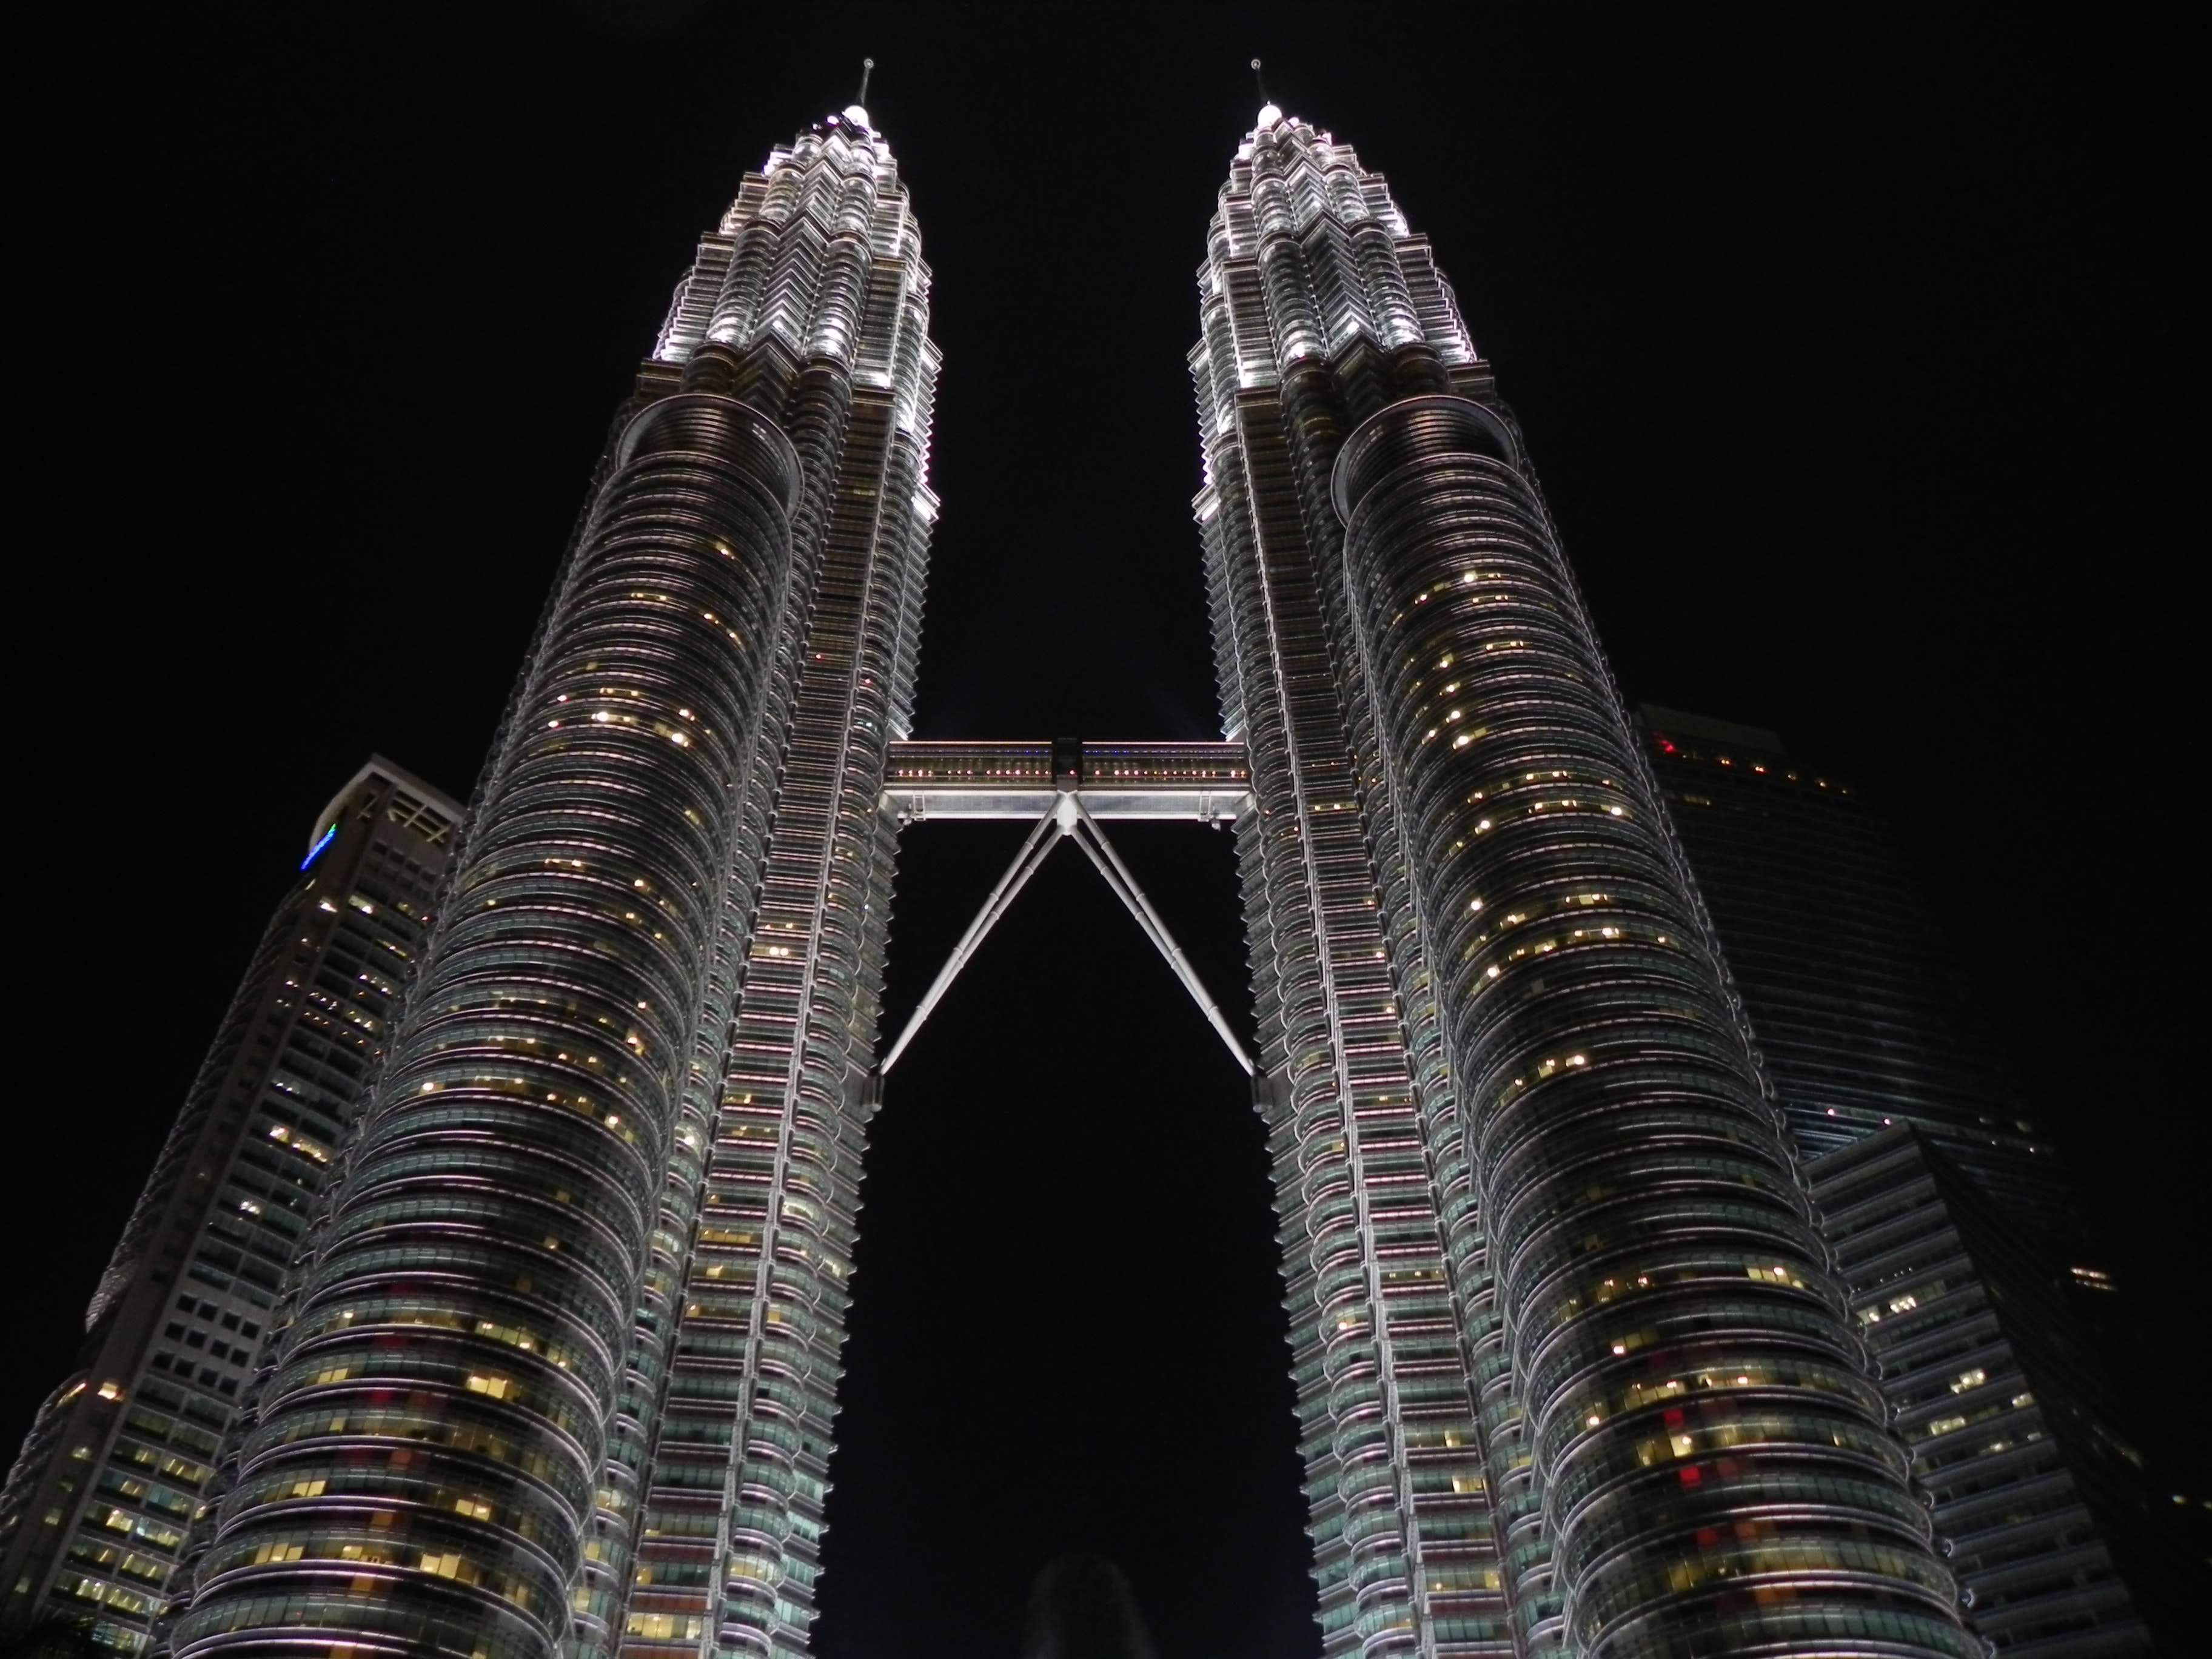 Petronas tower during nighttime photo